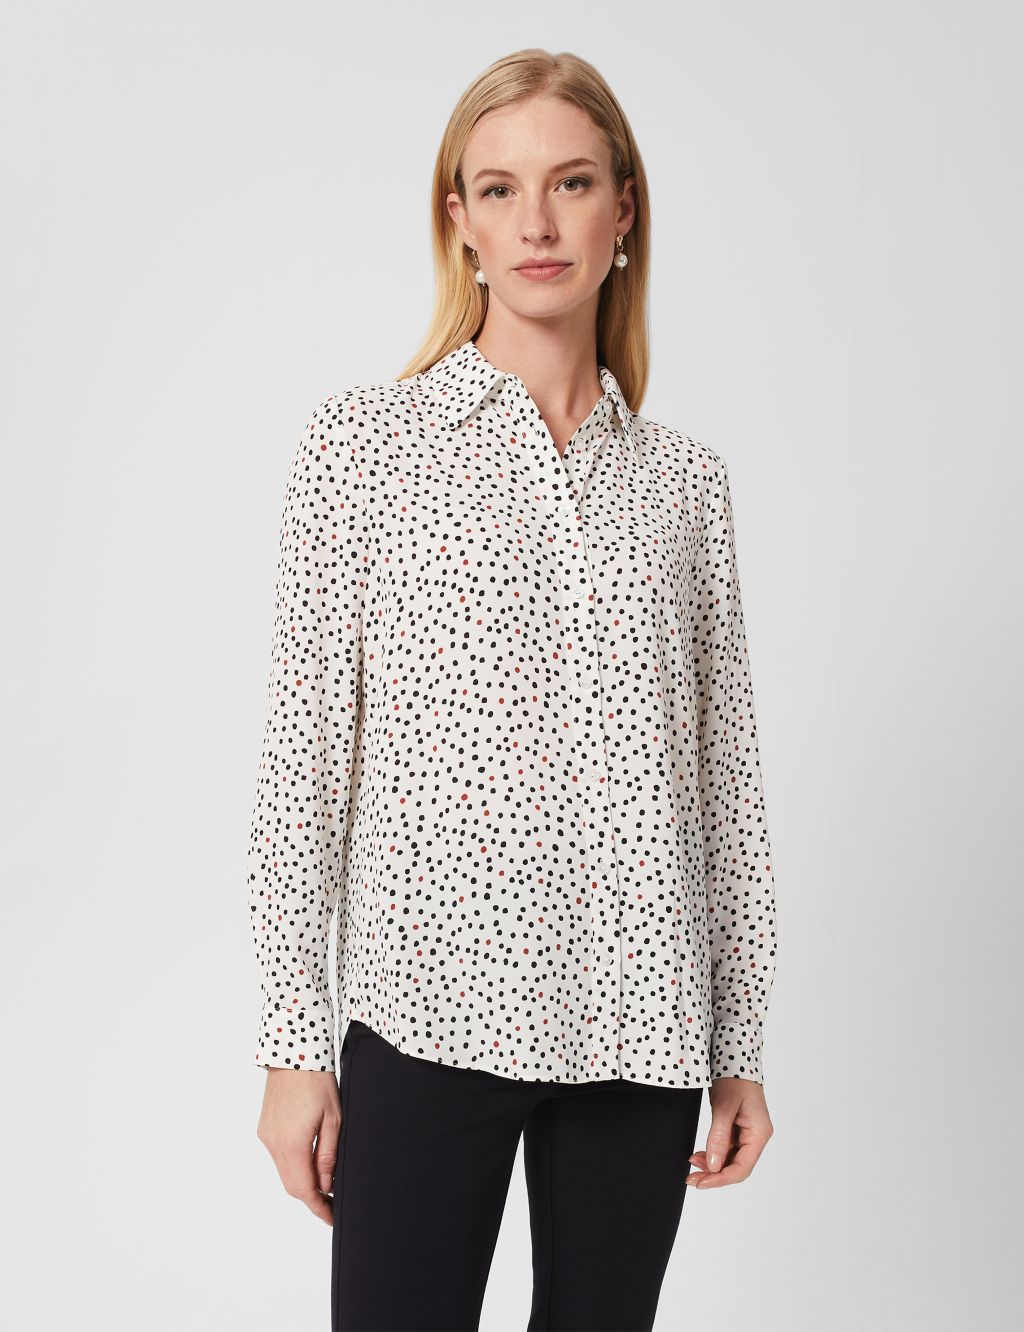 Polka Dot Collared Shirt image 1